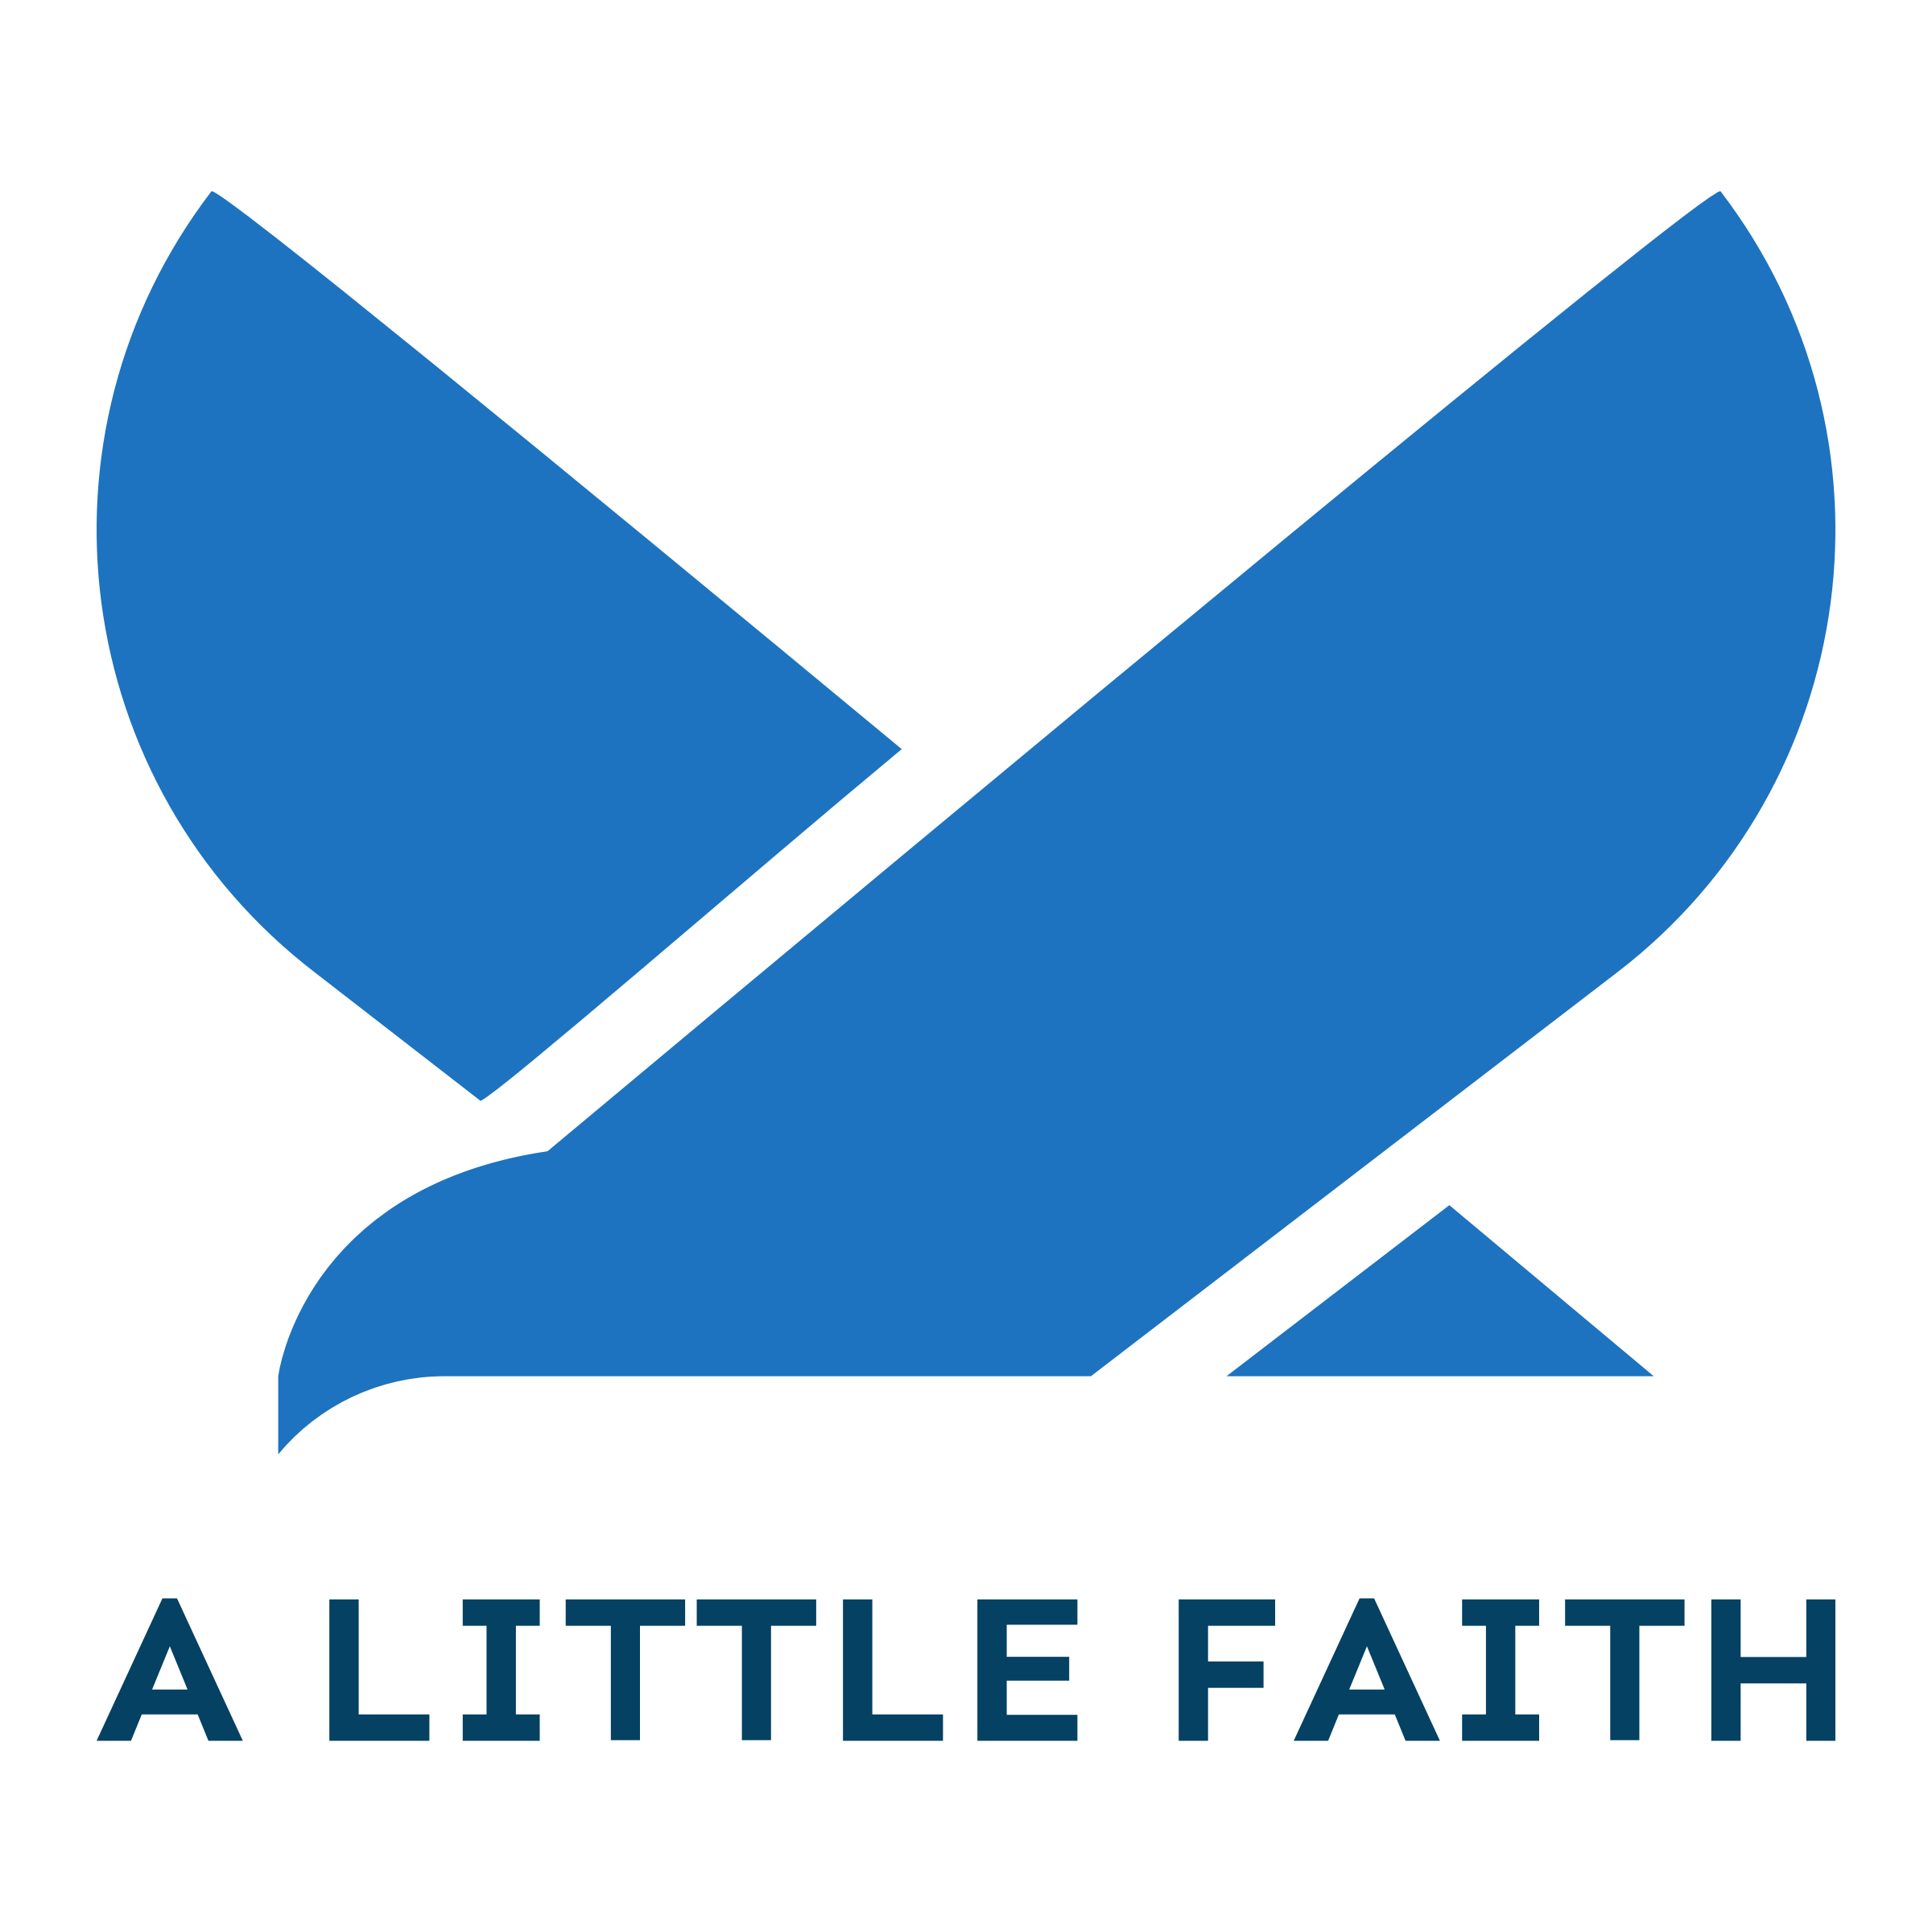 Faith Logos - 69+ Best Faith Logo Ideas. Free Faith Logo Maker. | 99designs